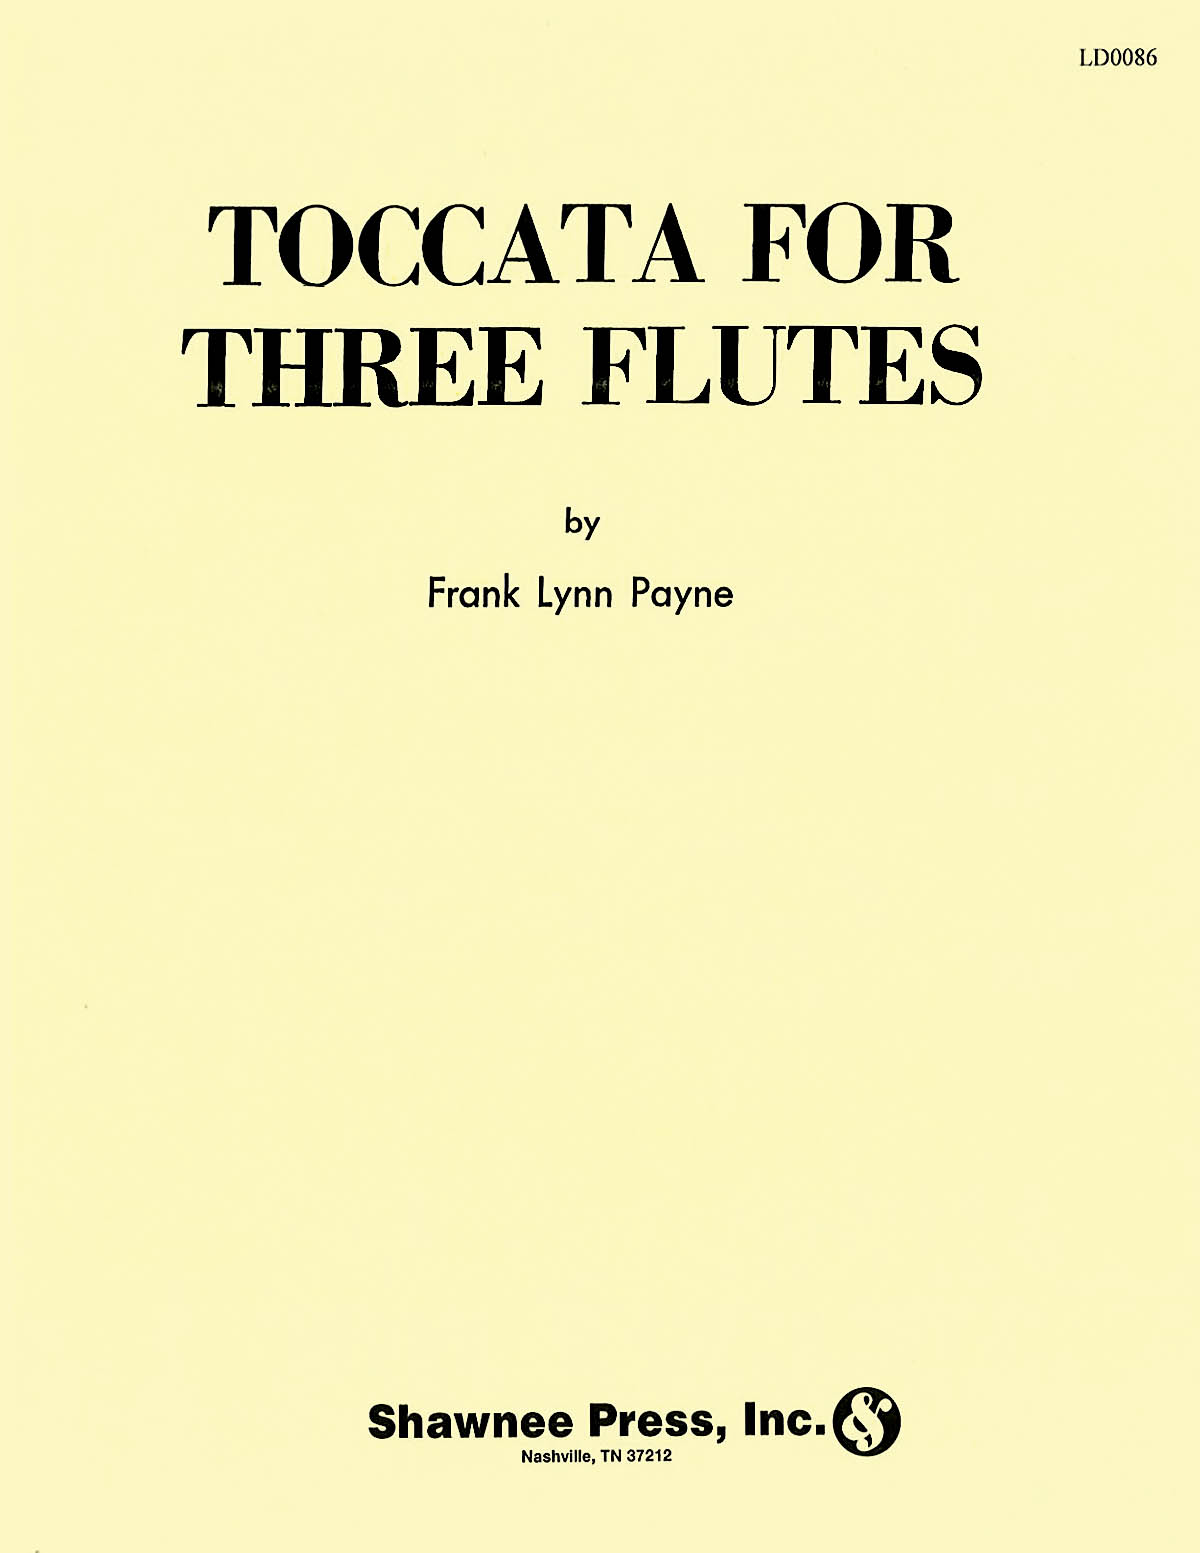 Toccata for Three Flutes Flute Trio